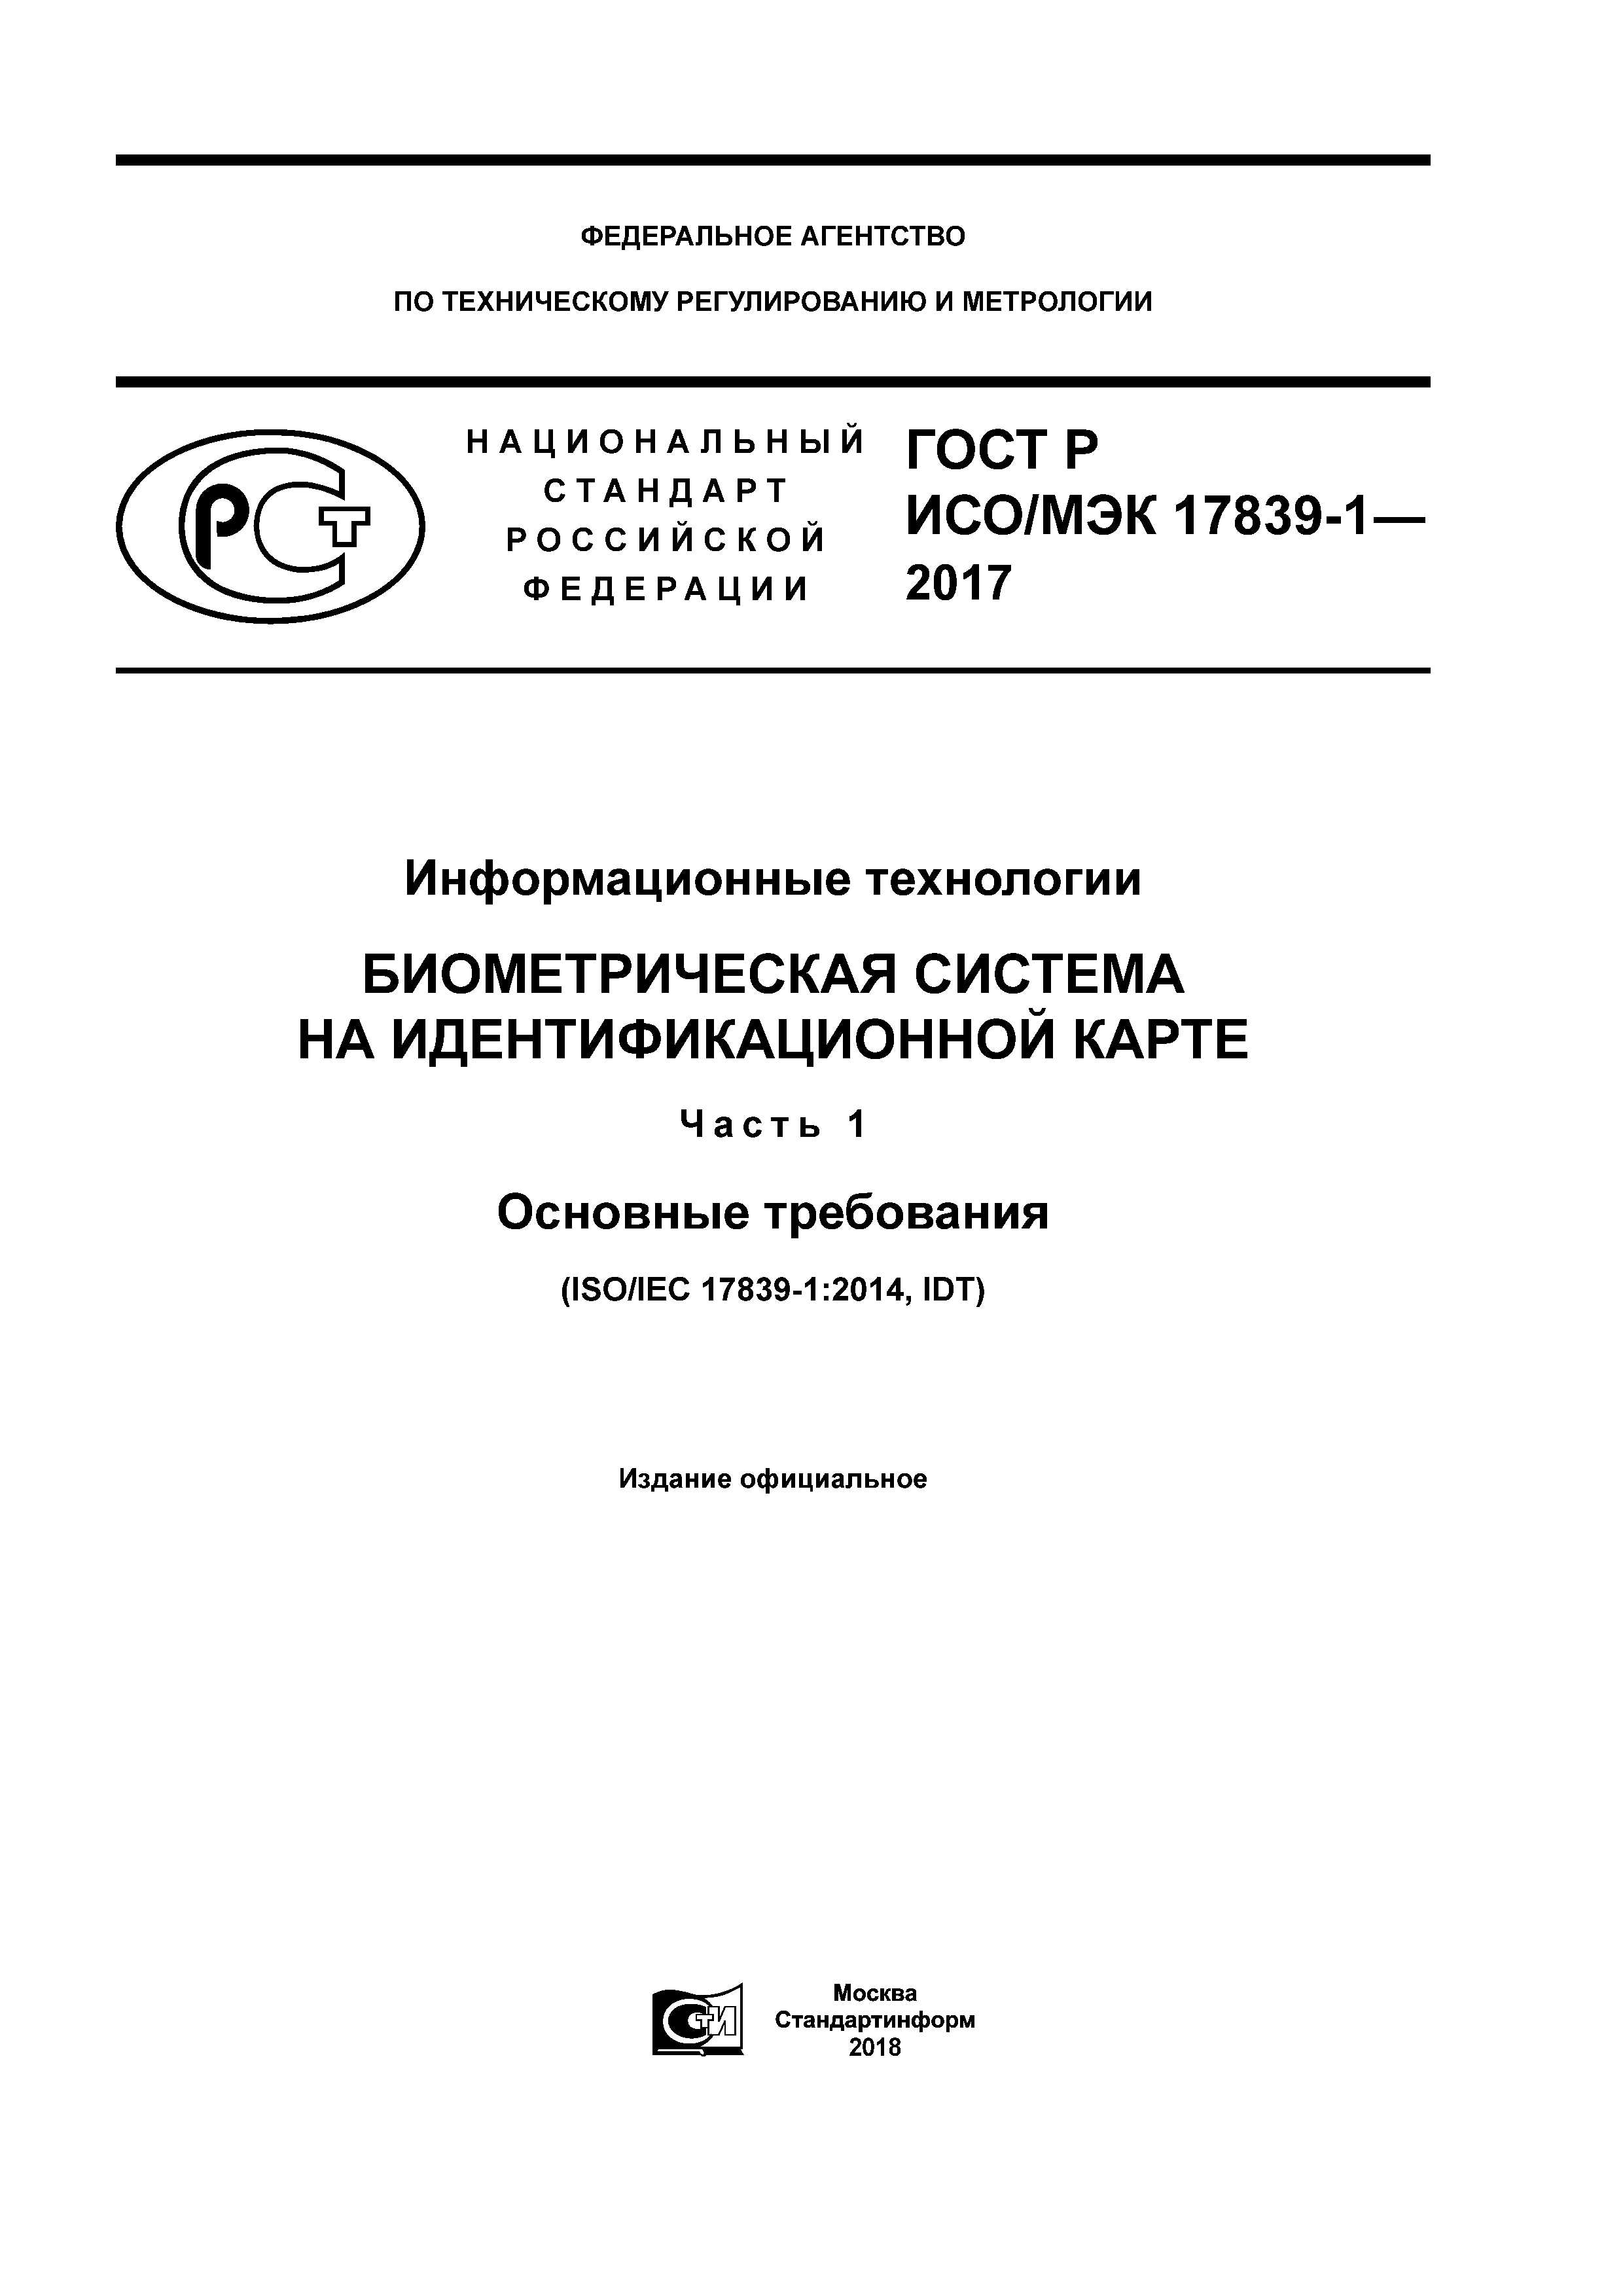 ГОСТ Р ИСО/МЭК 17839-1-2017